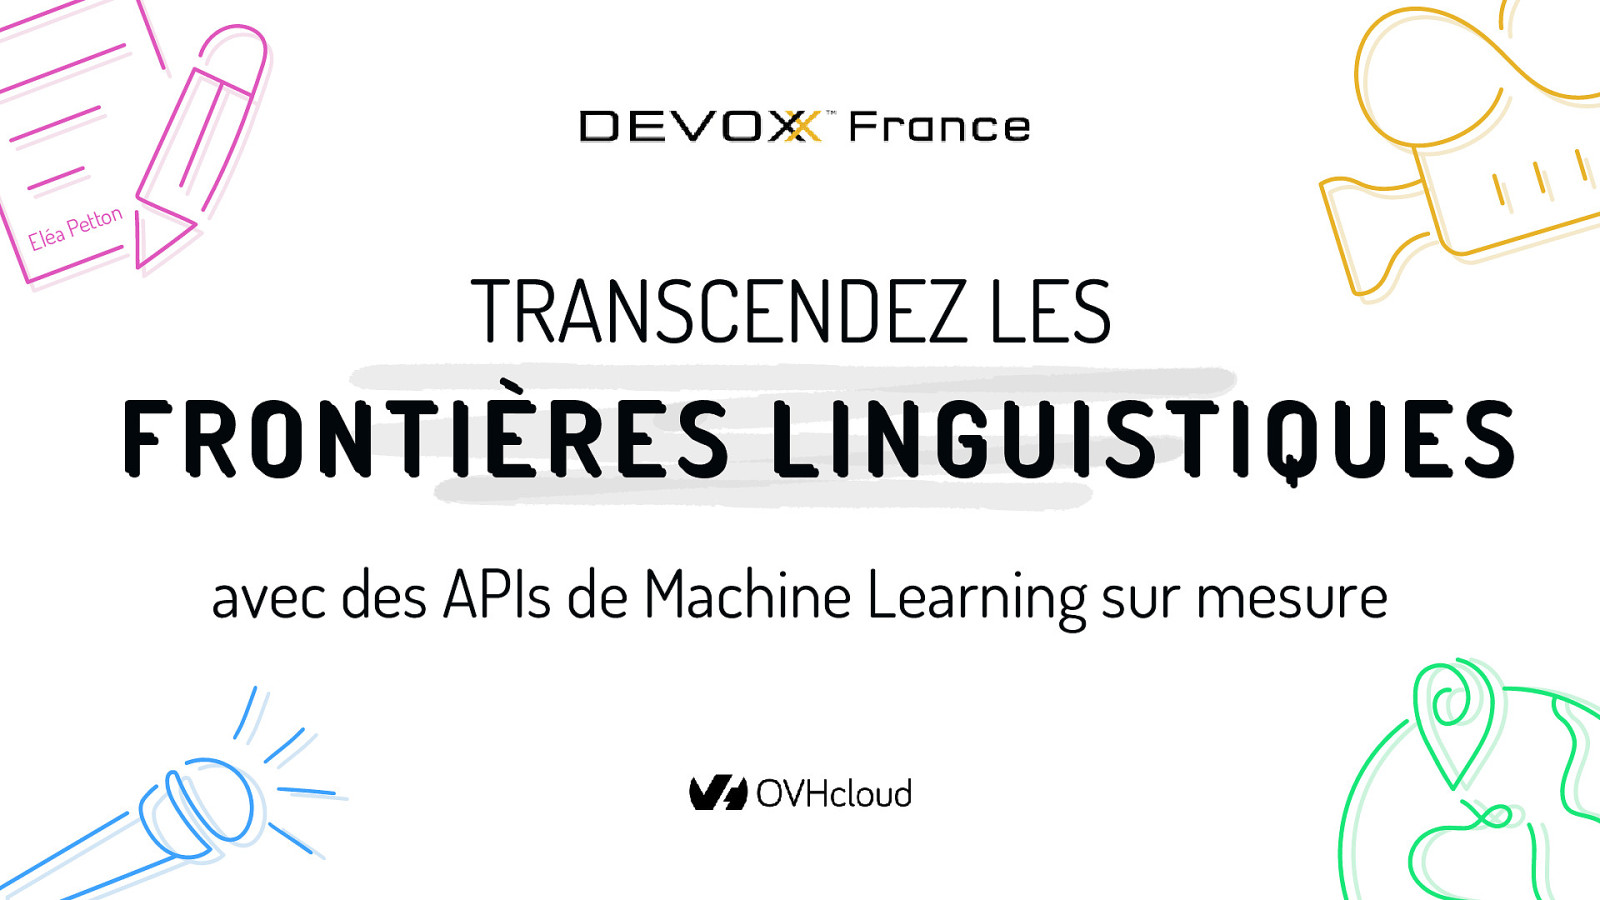 Transcendez les frontières linguistiques avec des APIs de Machine Learning sur mesure : embarquez dans le développement d’une solution de transcription temps réel de vos contenus multimédias !